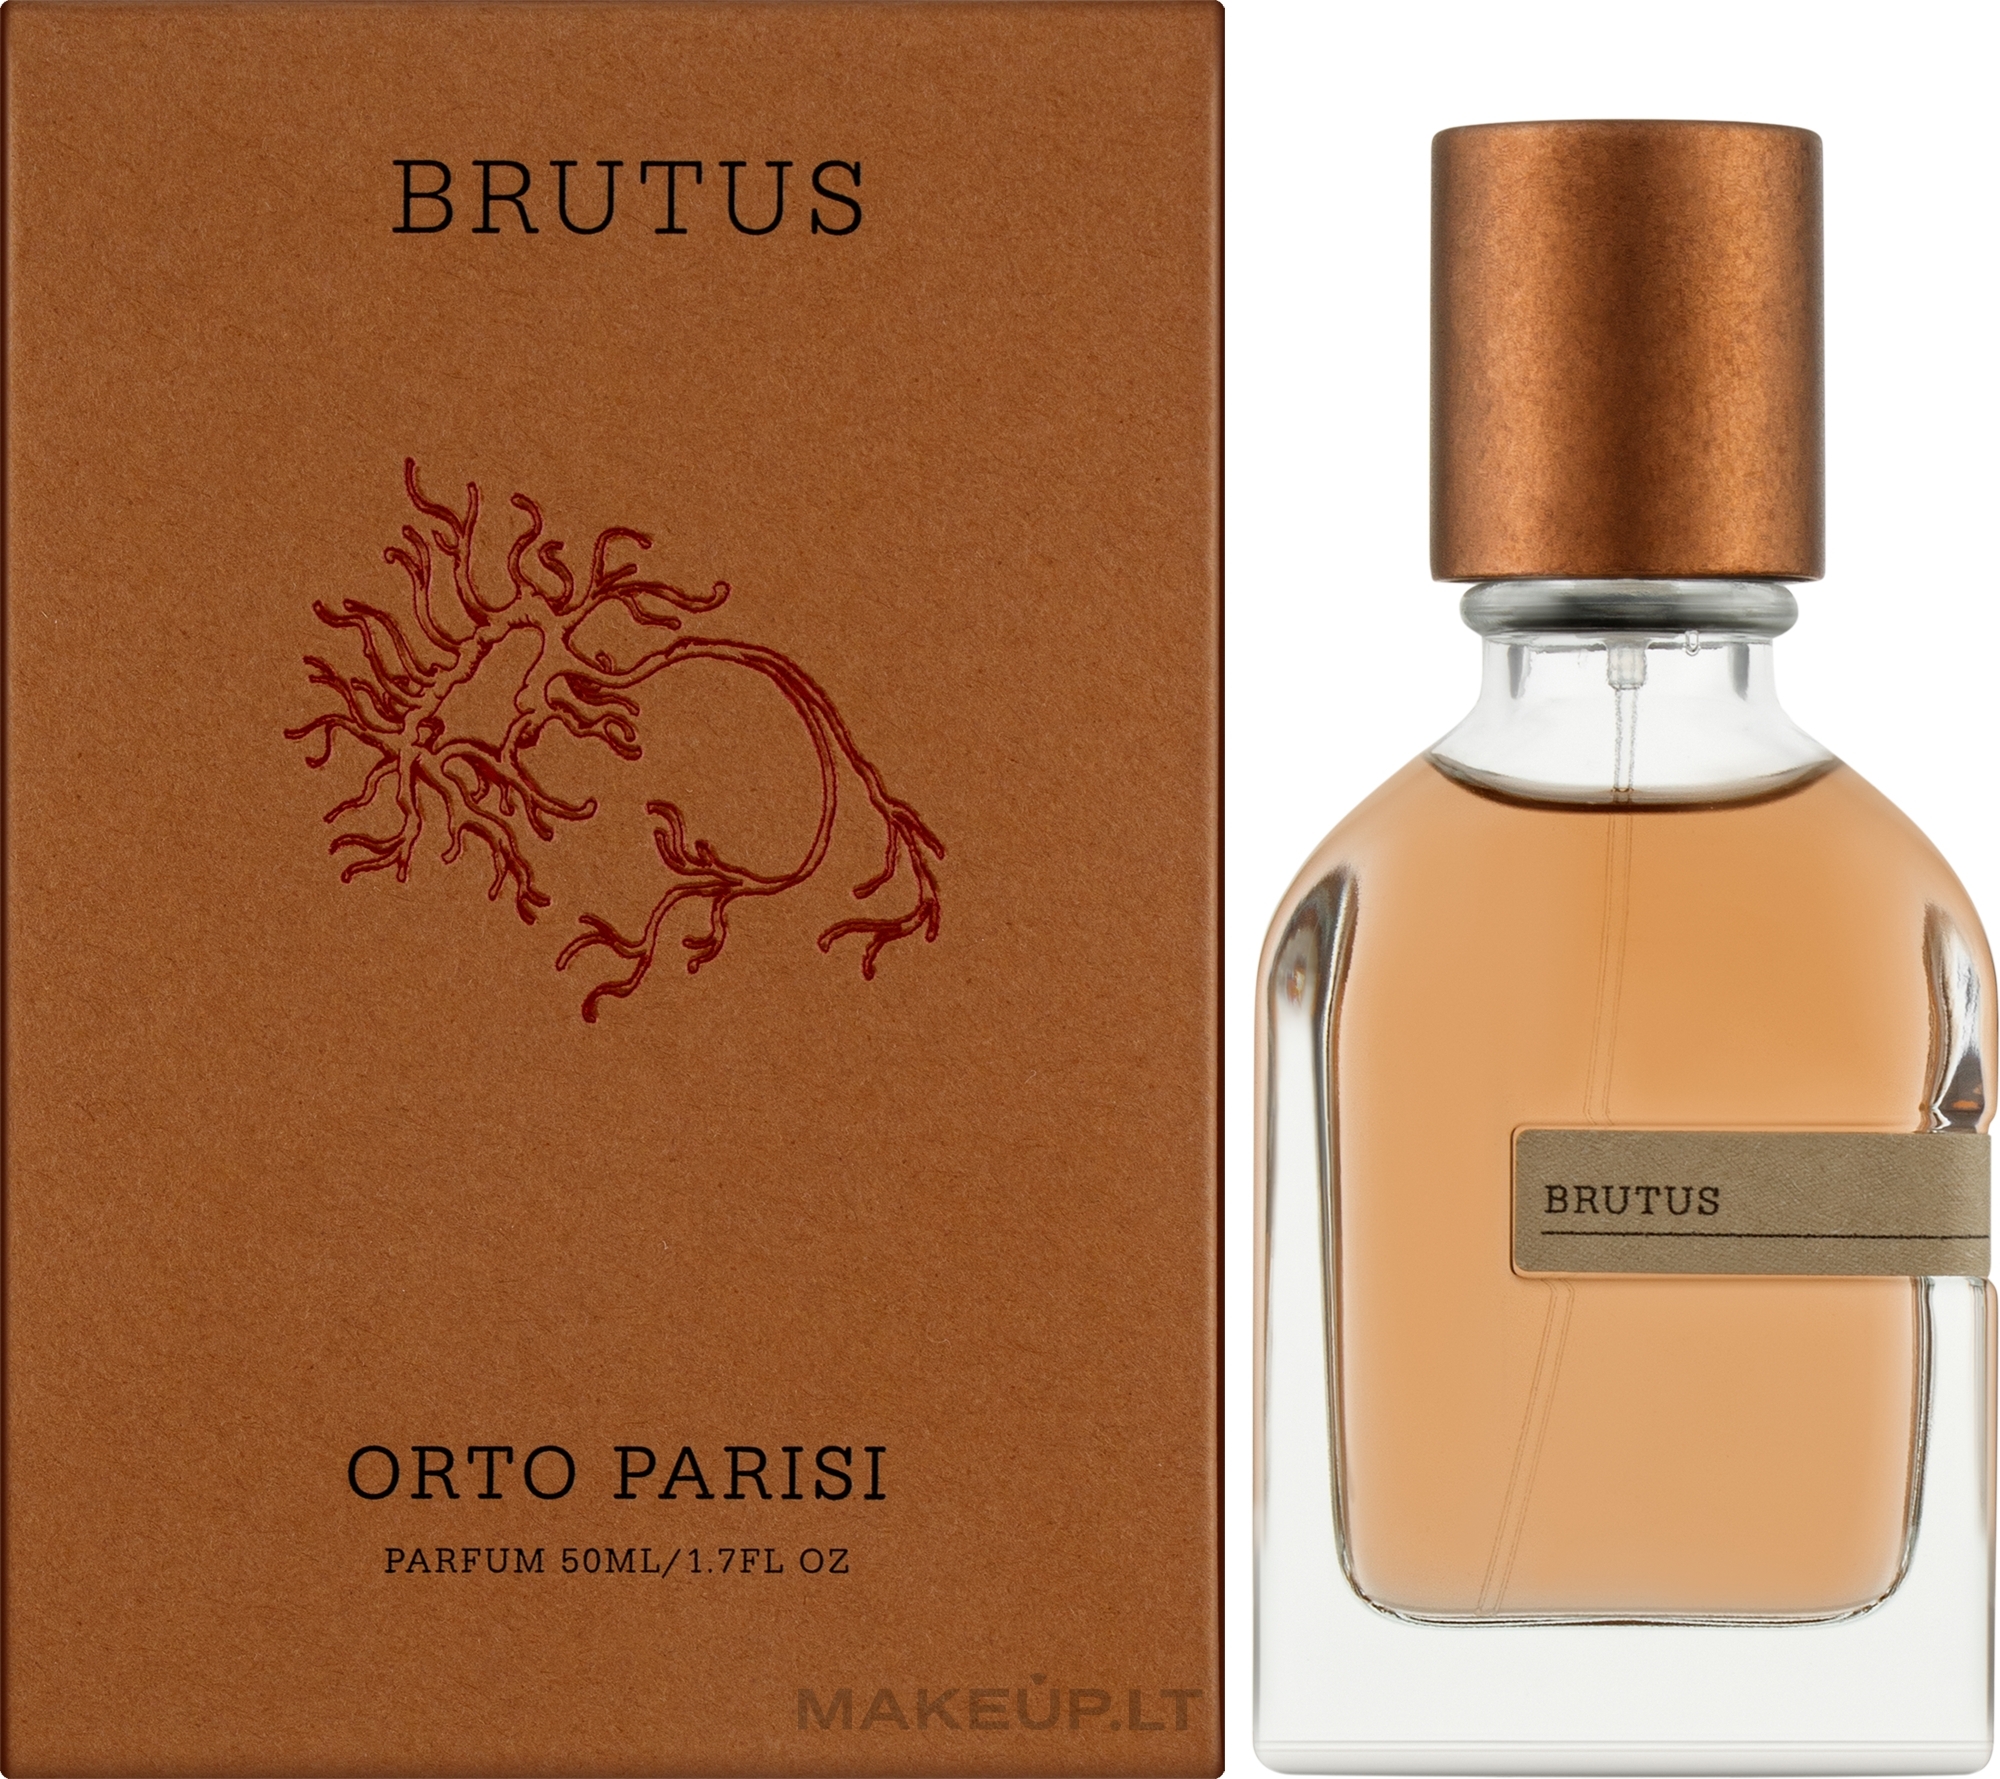 Orto Parisi Brutus 5 ml NIŠINIAI kvepalų mėginukas (atomaizeris) Unisex Parfum